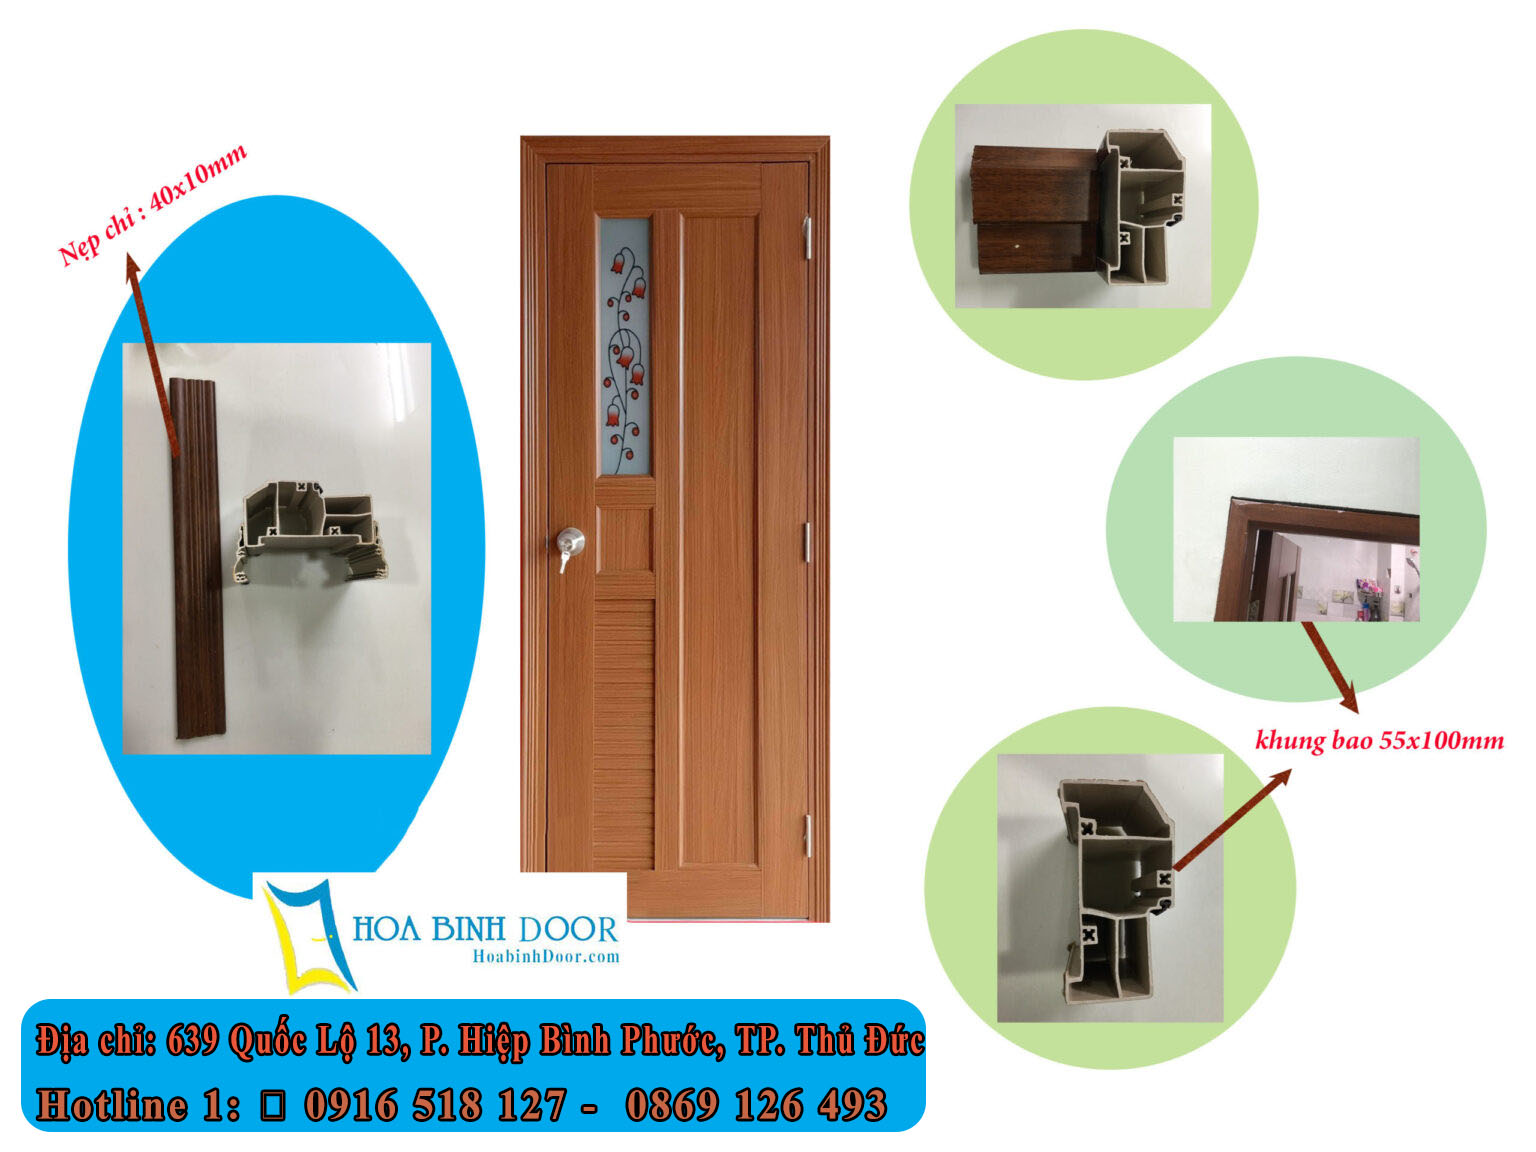 Nội, ngoại thất: Ưu điểm cửa nhựa đài loan – Cửa nhựa gỗ cao cấp Hoabinhdoor Cau-tao-cua-nhua-dai-loan-ghep-thanh